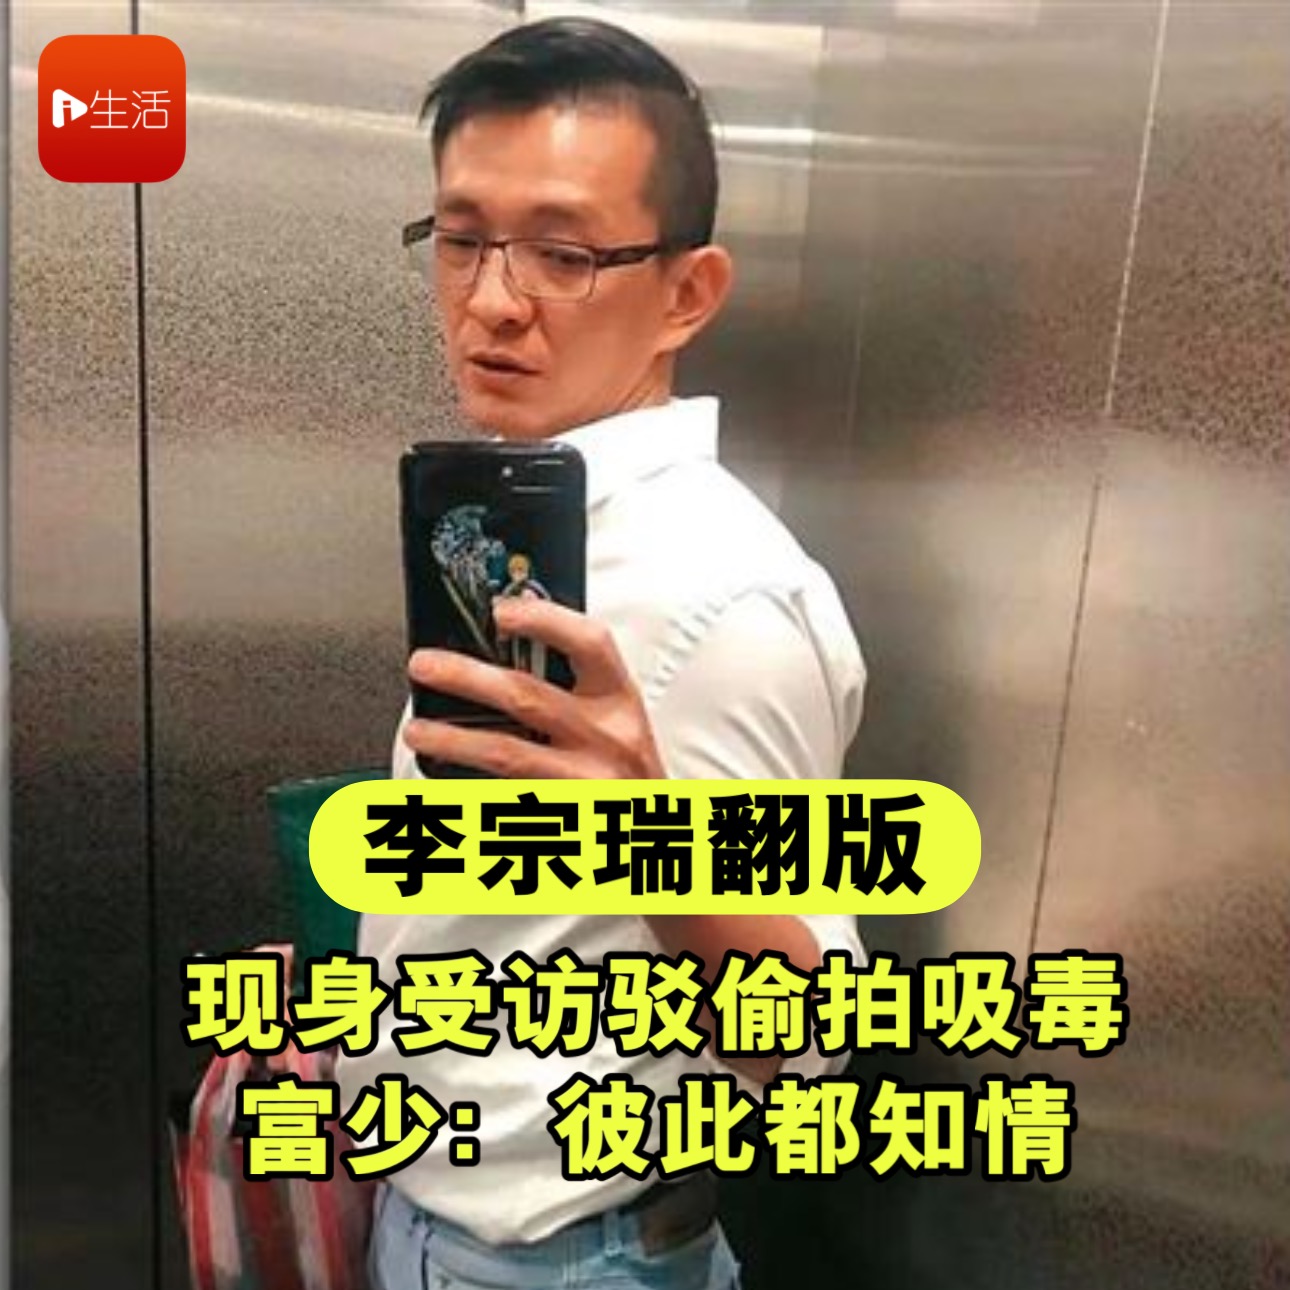 39岁的台湾名模吴亚馨与上海富商结婚，此前因不雅照片事业尽毁